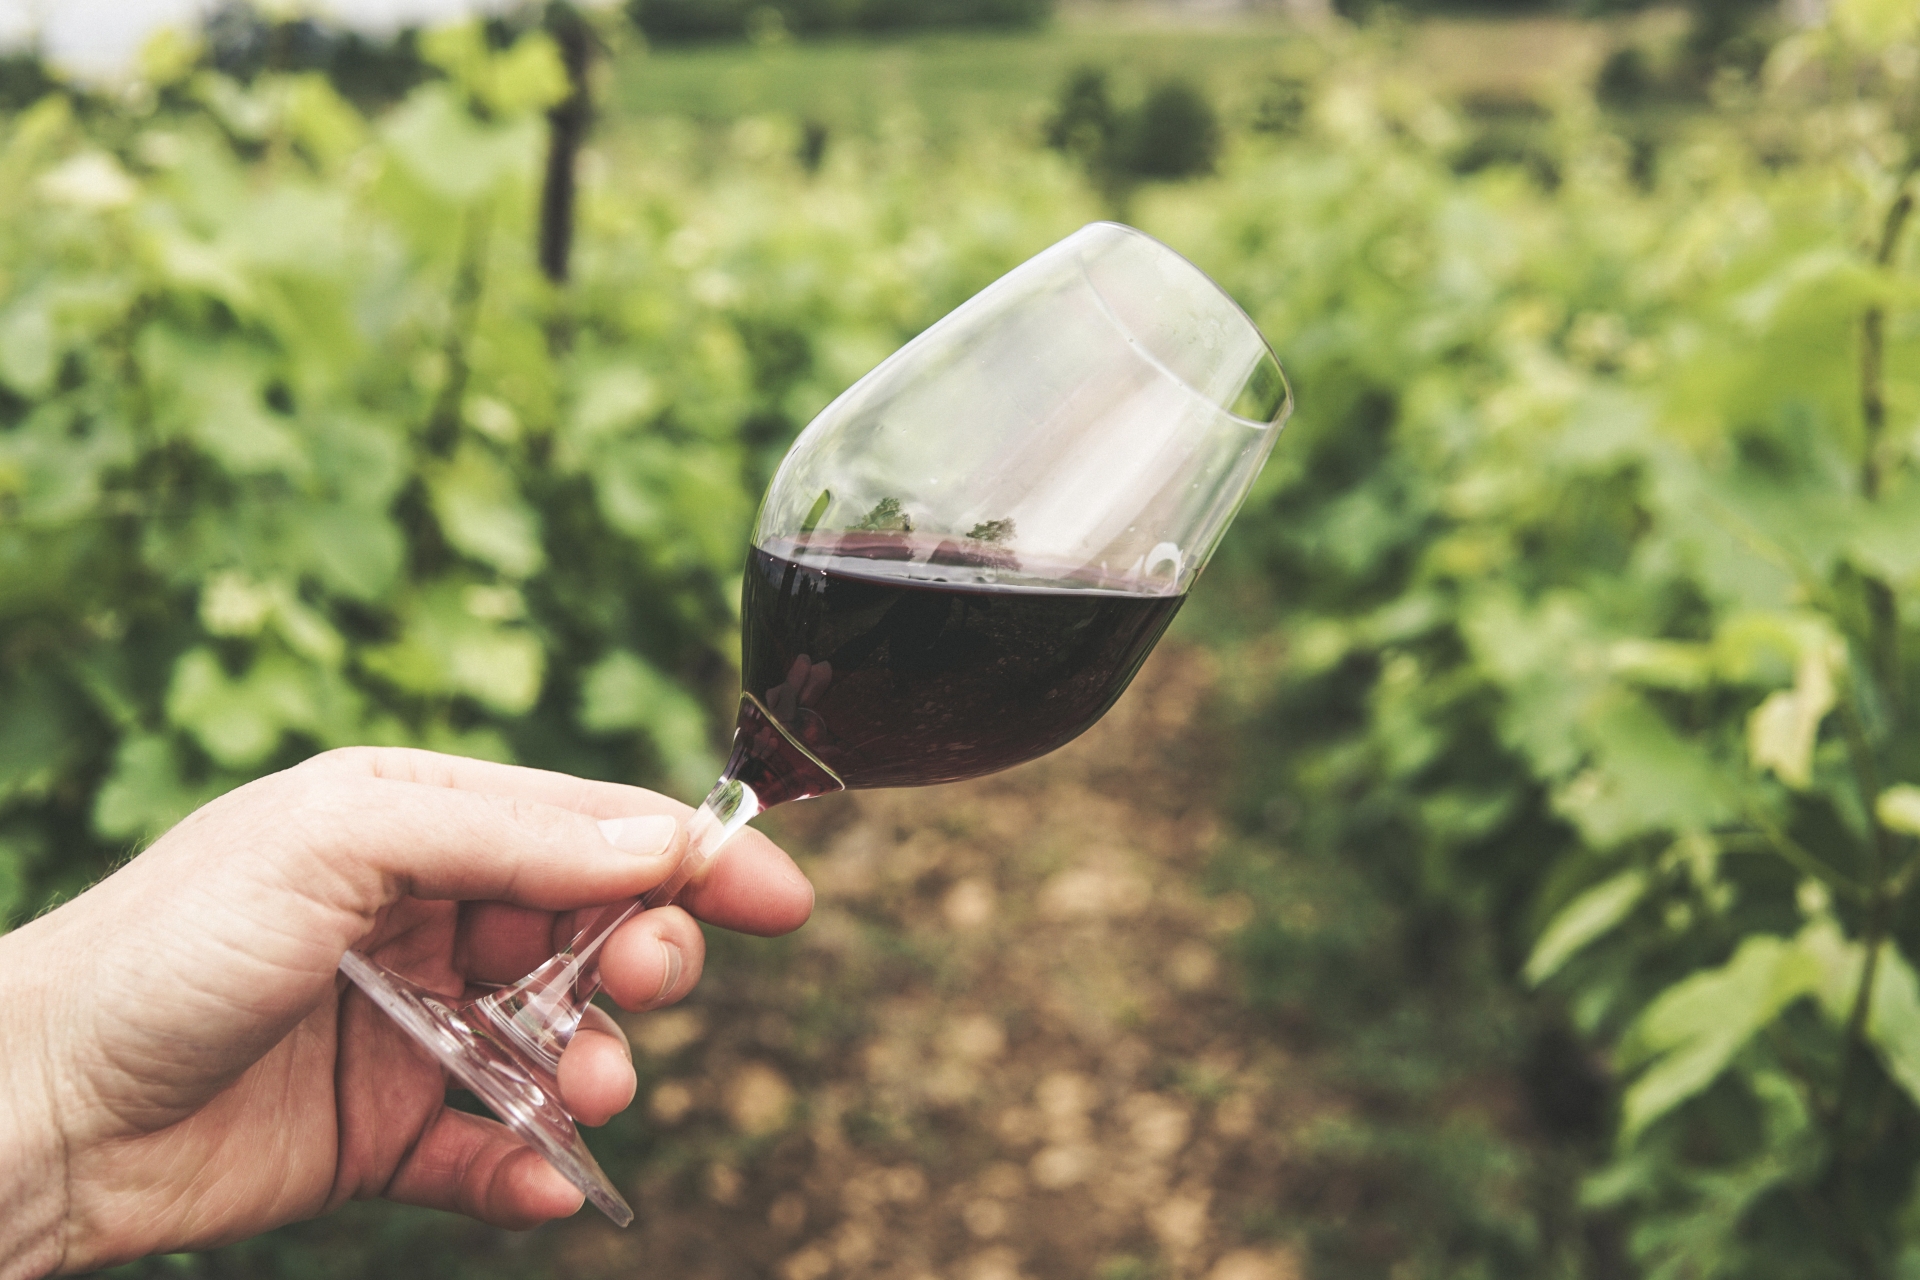 Développer le tourisme viticole dans la région